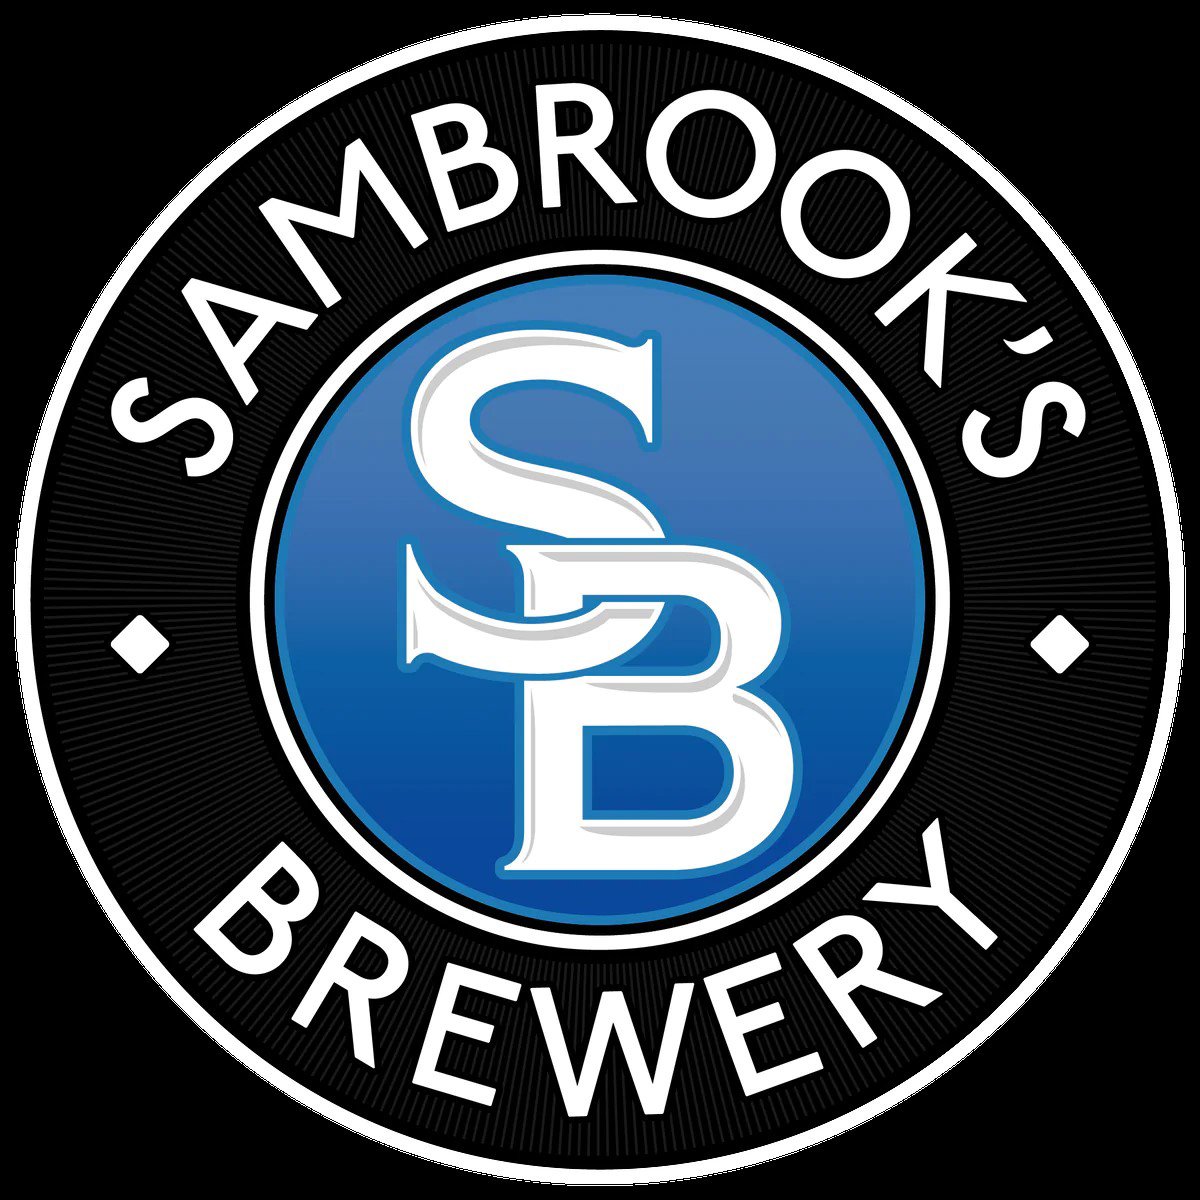 Sambrooks Brewery London logo JPEG.jpg